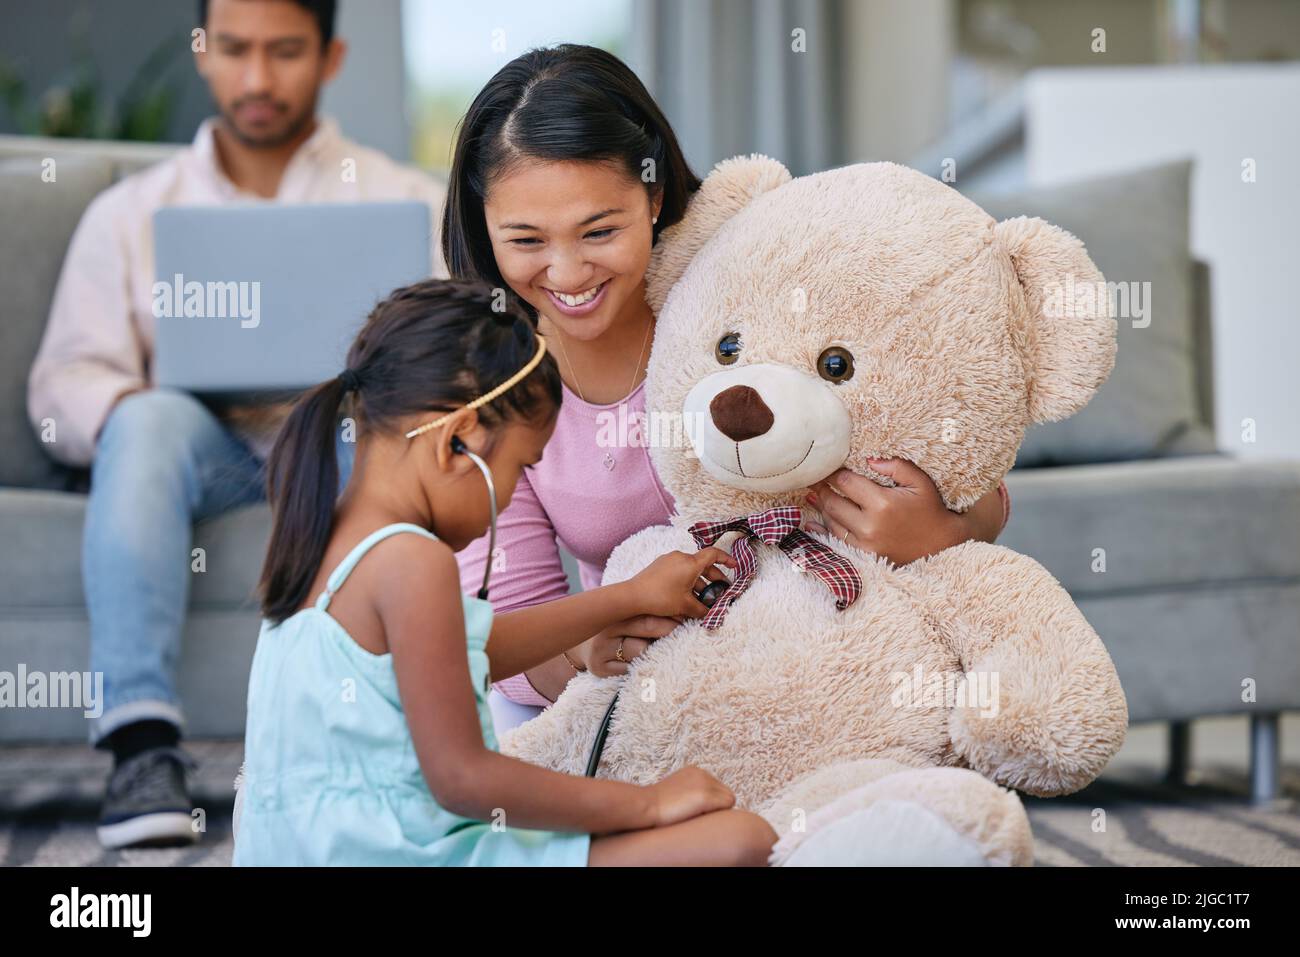 Forse stai alzando un futuro dottore. Una bambina che gioca dottore con sua madre usando il suo orsacchiotto. Foto Stock